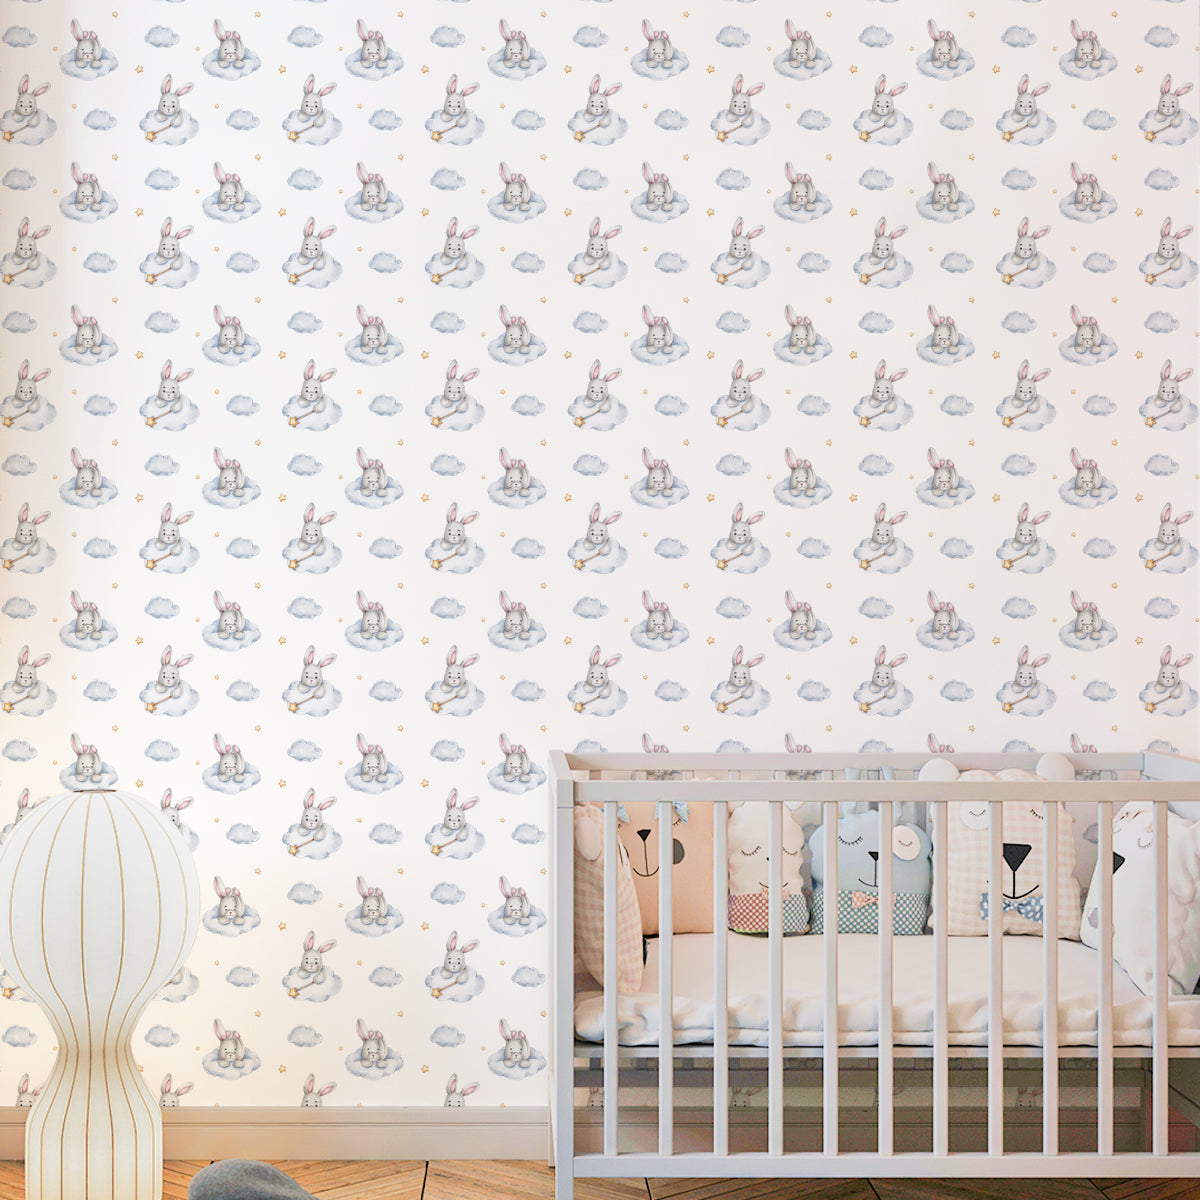 Peek-a-Boo, Cute Bunnie Wallpaper Designs for Kids Room, Blue